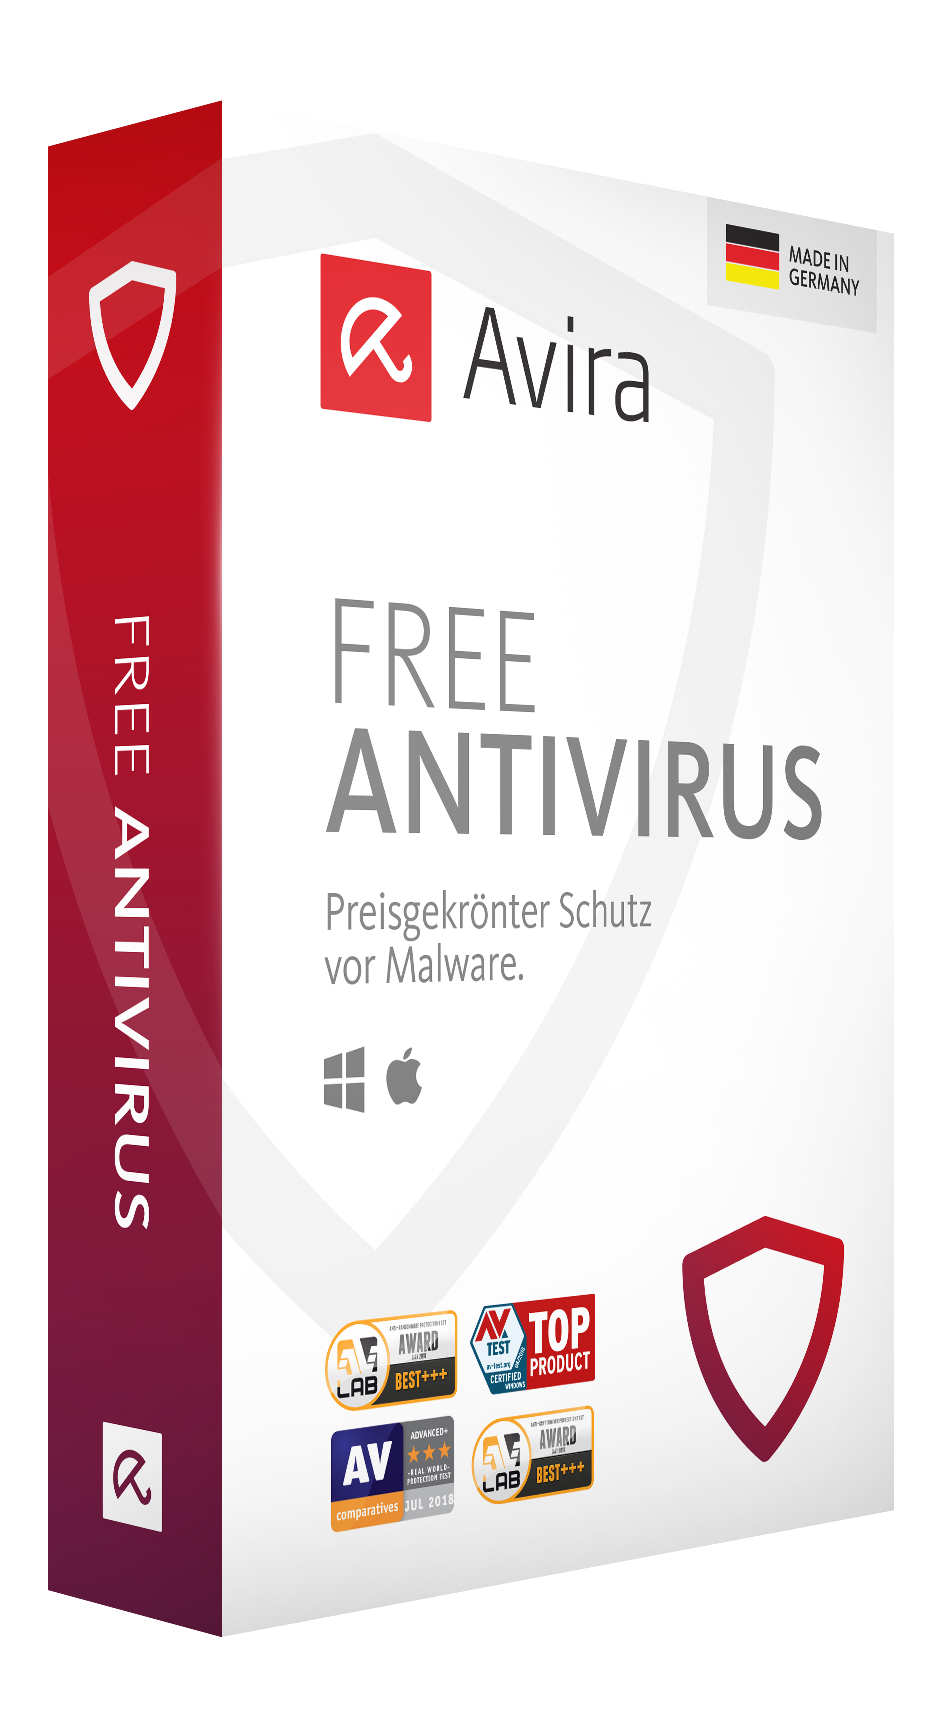 avira antivirus free download 2019